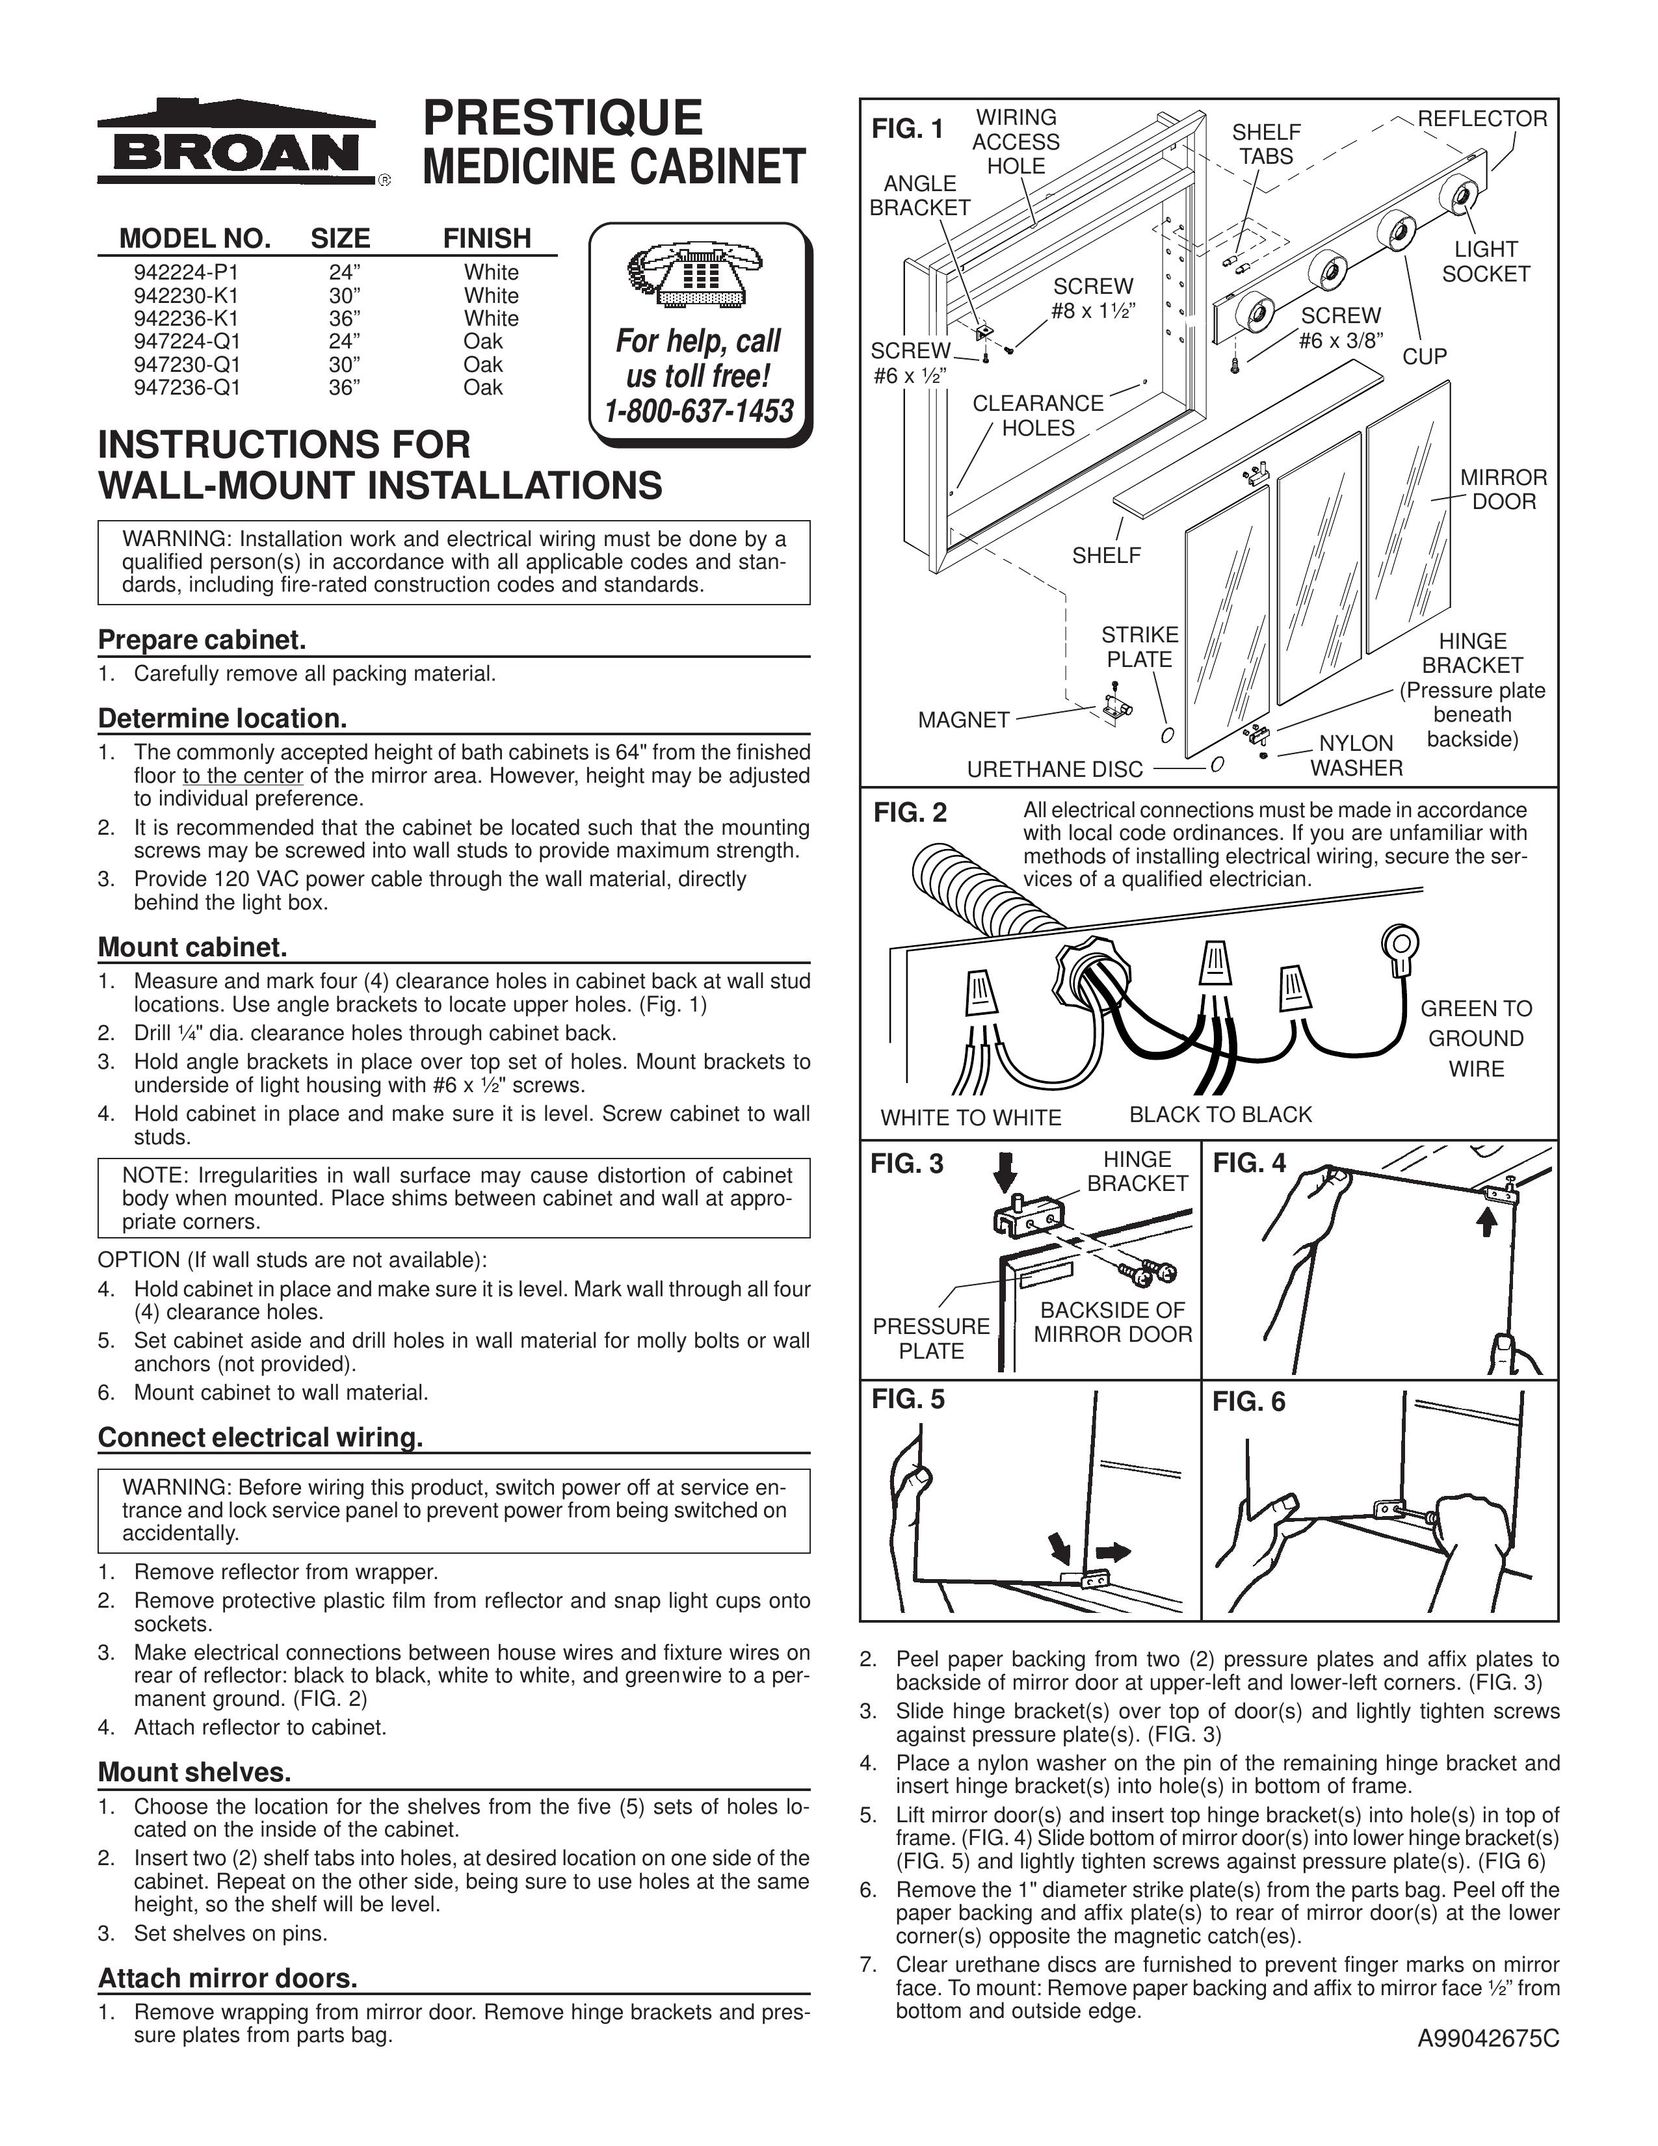 Broan 947236-Q1 TV Mount User Manual